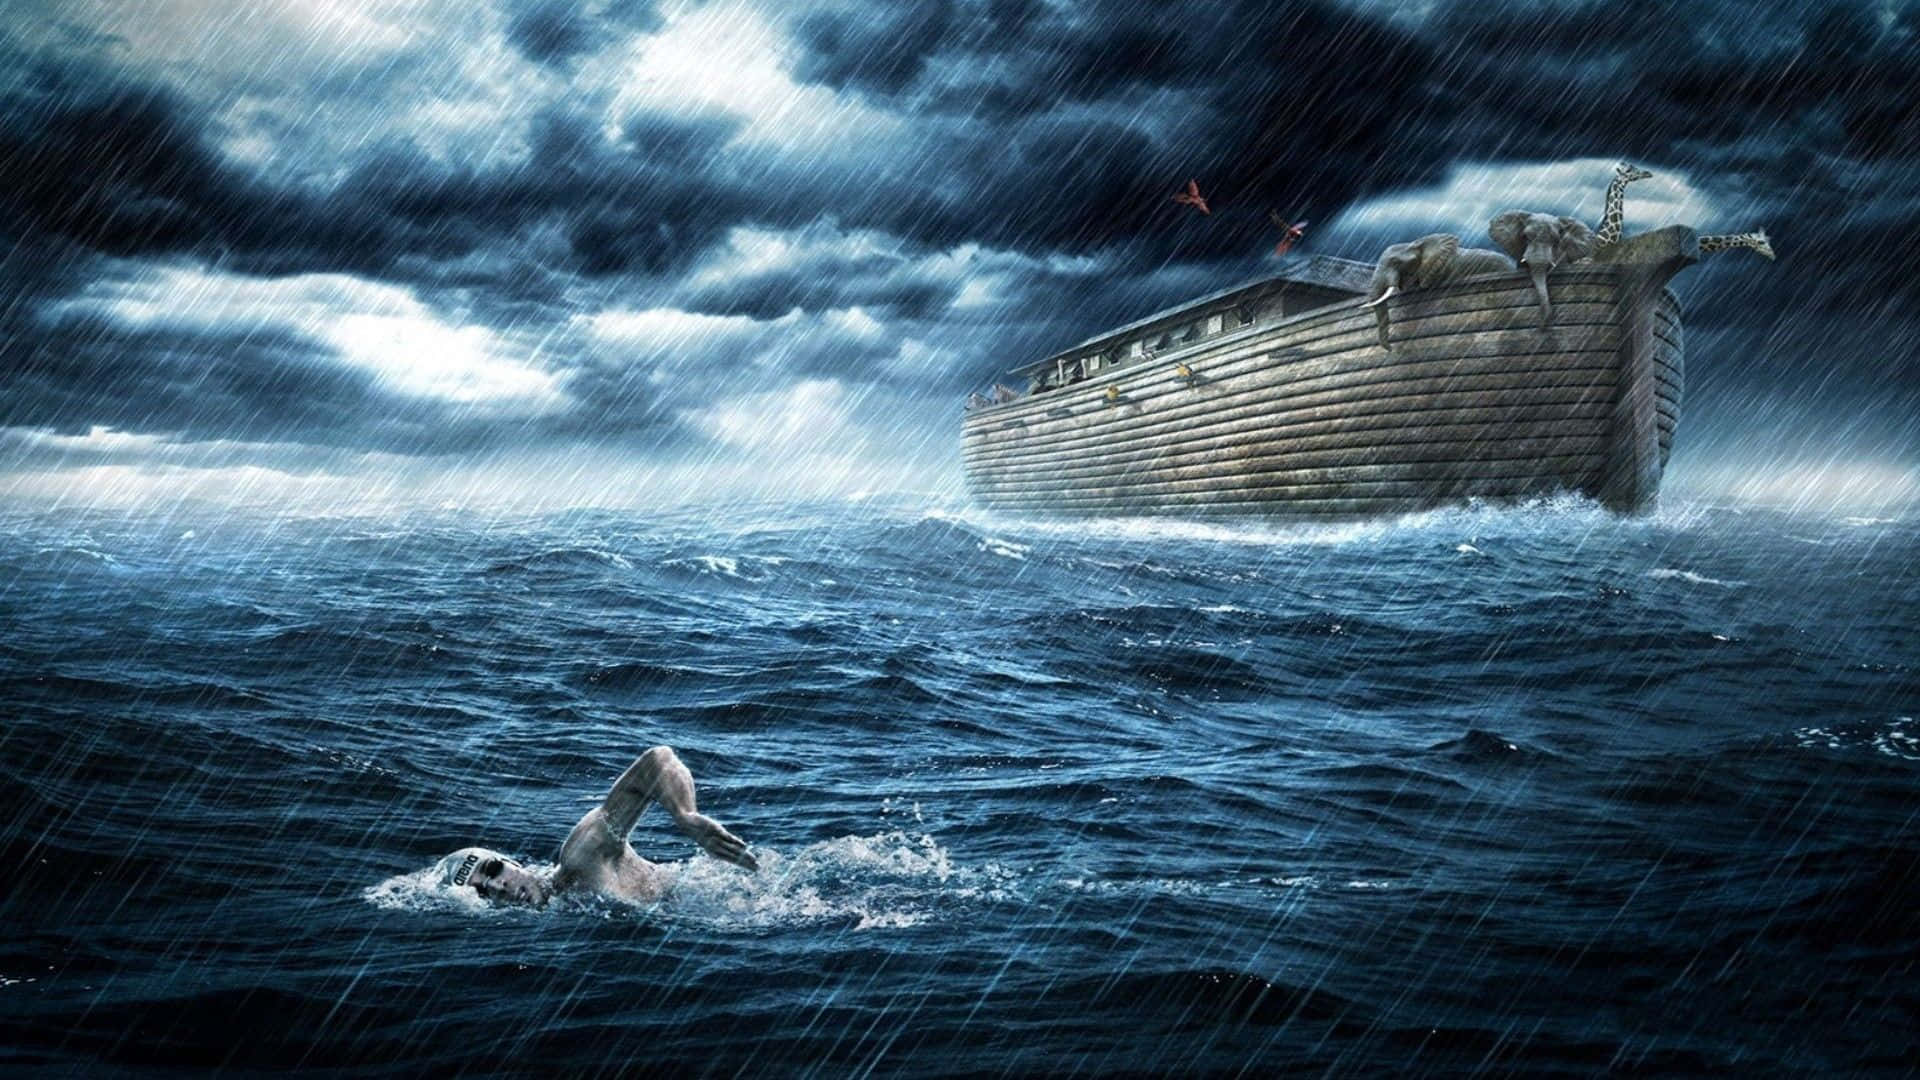 Noah's Ark In The Ocean Wallpaper